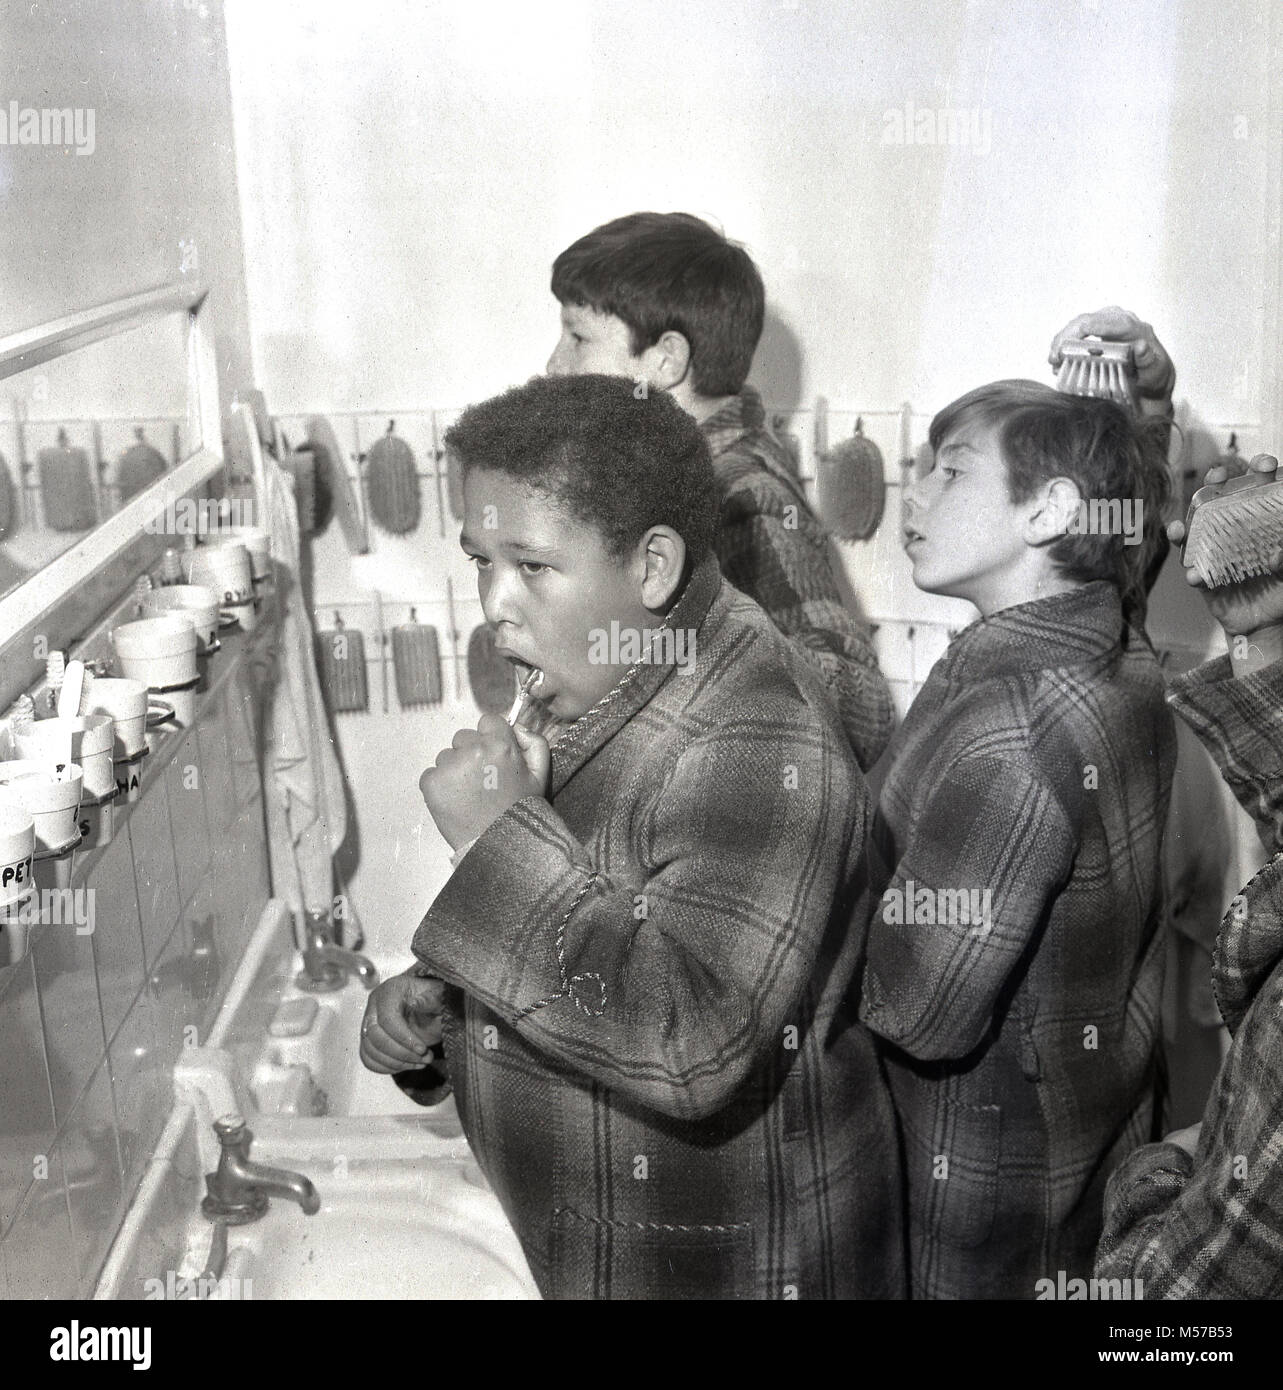 1968, historique, dans le sud de Londres, les jeunes garçons dans un internat de l'état dans leurs robes de nettoyer leurs dents avant de se coucher. Banque D'Images